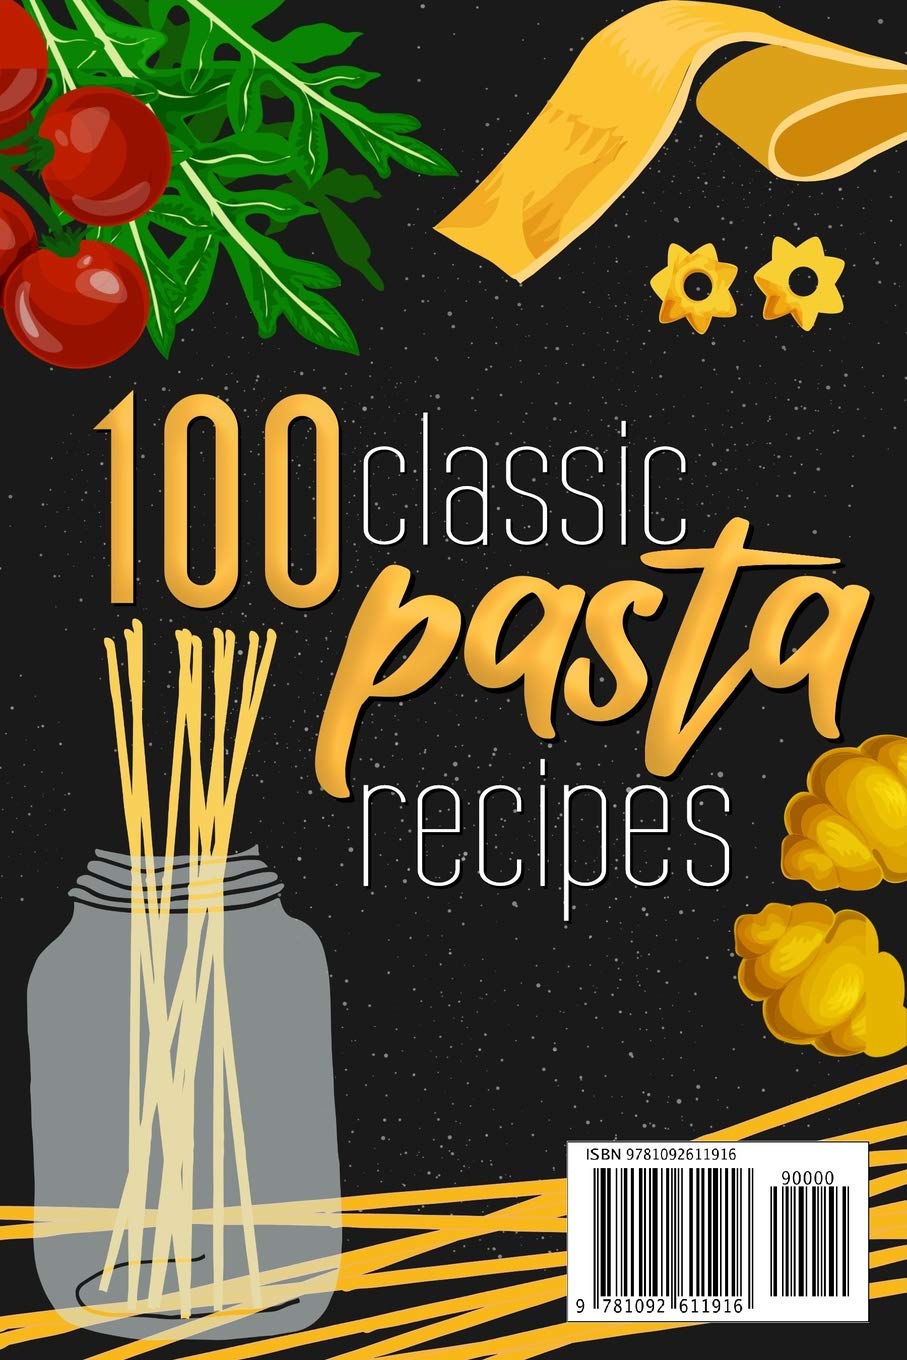 The Best Pasta Cookbook: 100 Classic Pasta Recipes